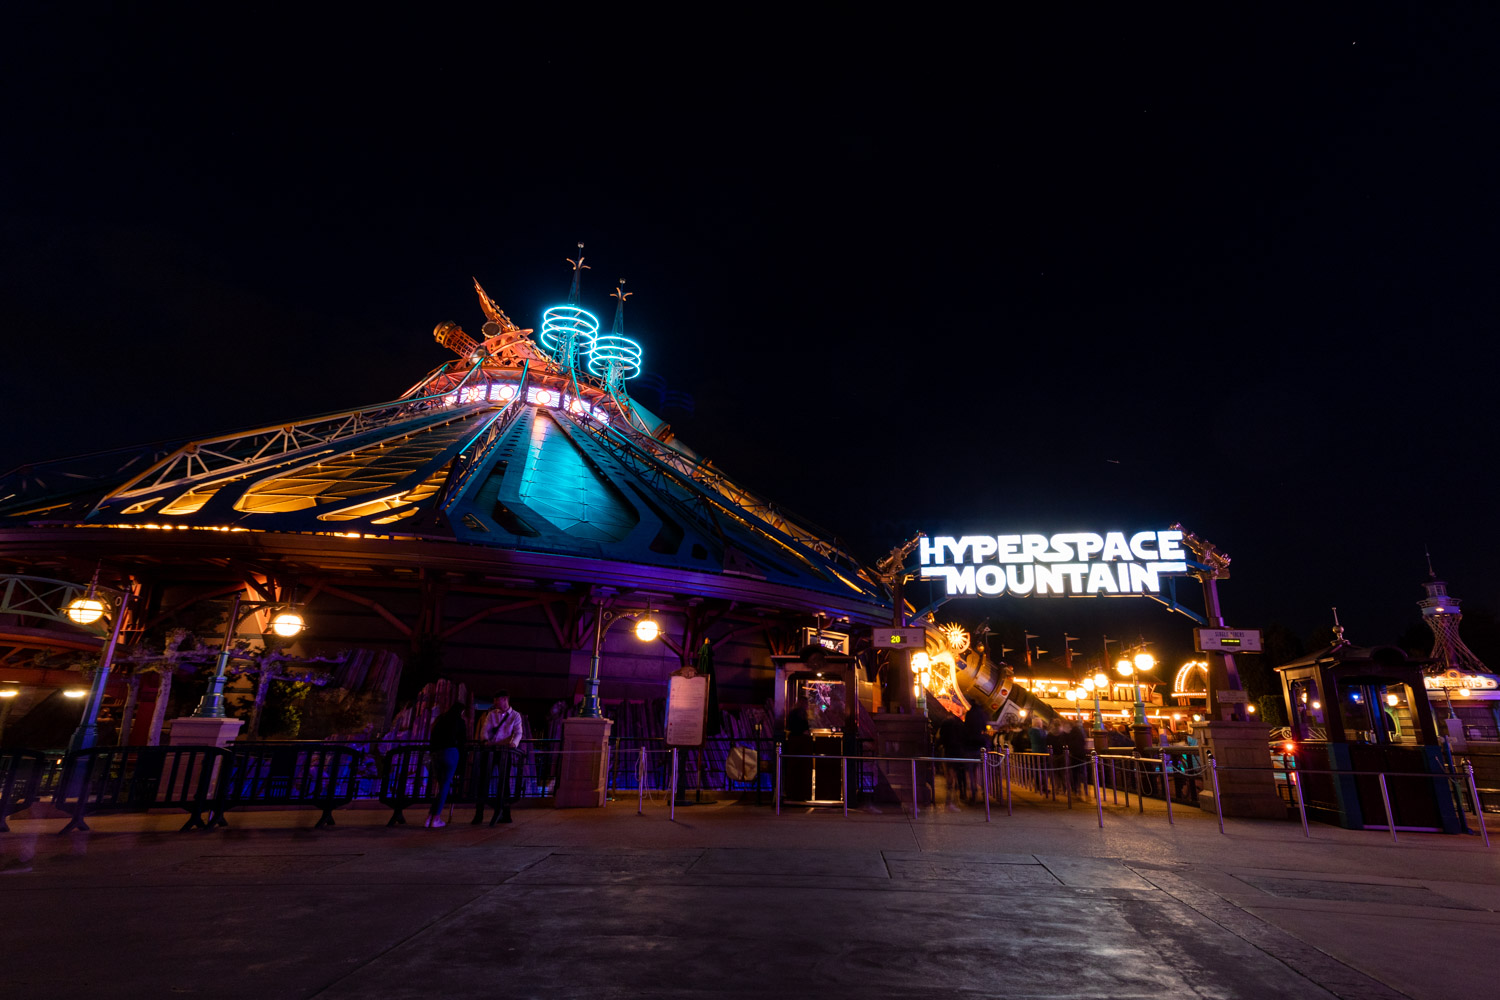 De attractie Hyperspace Mountain gezien vanaf de voorkant in het donker